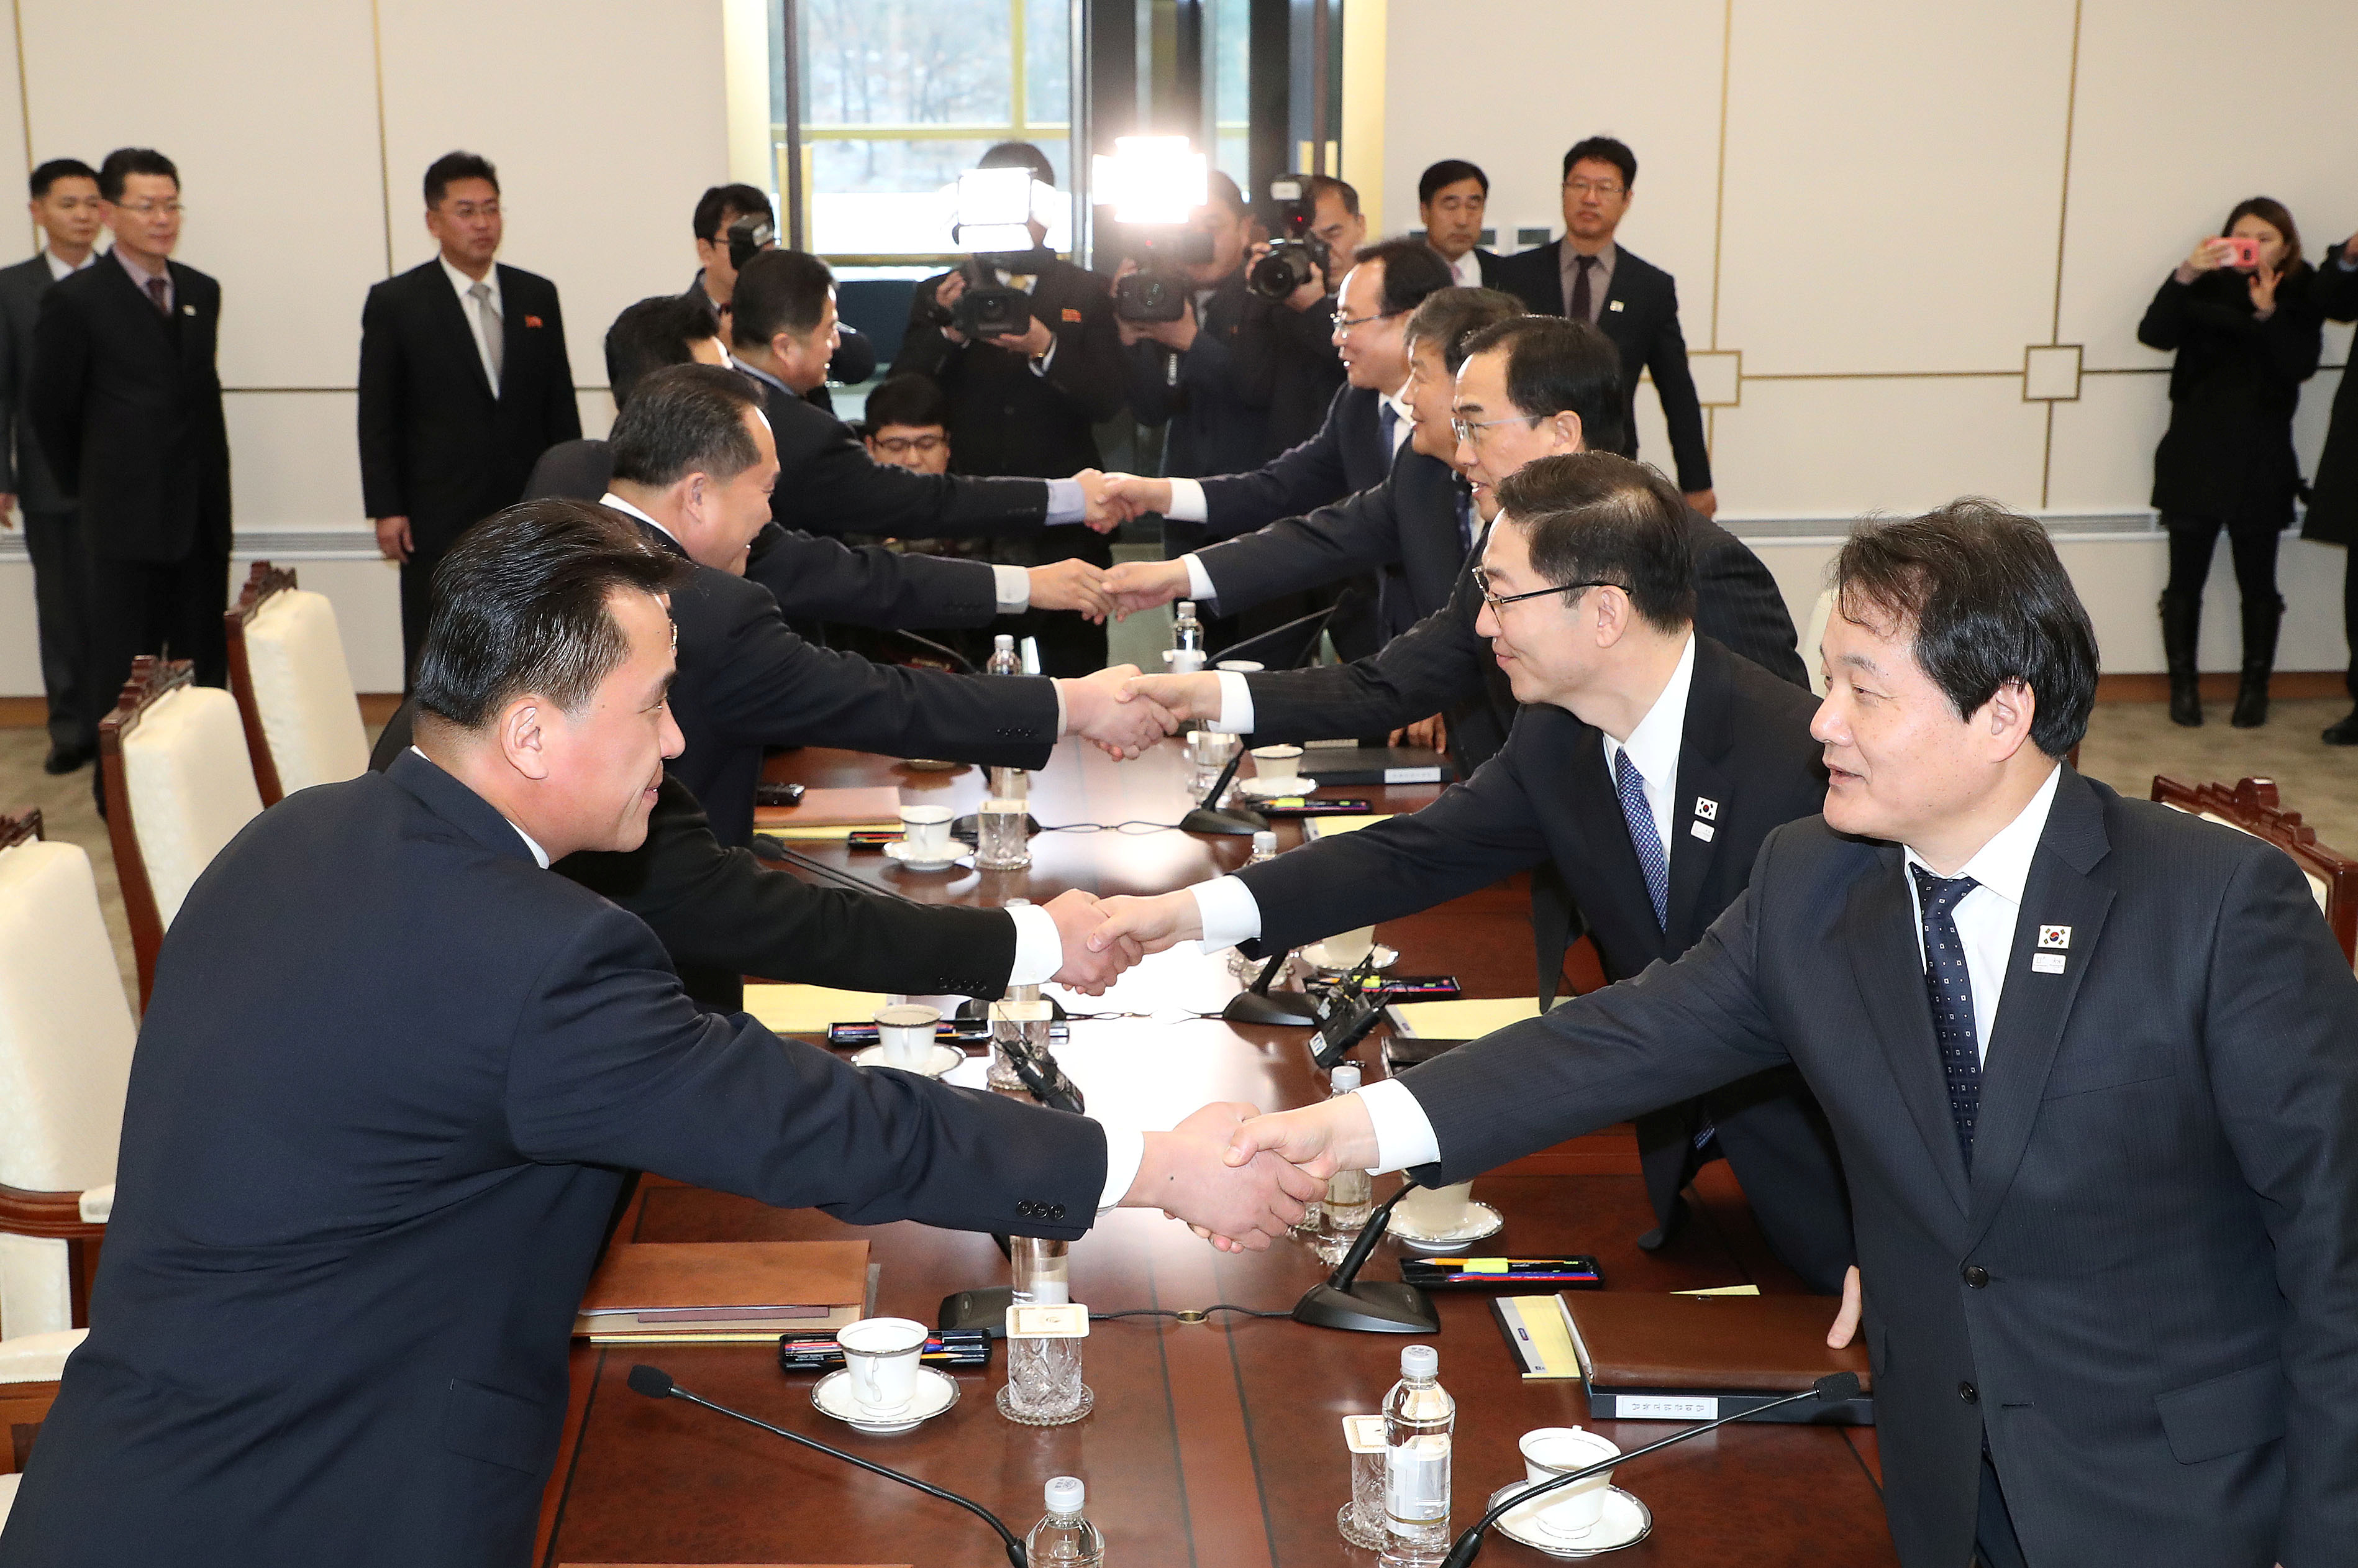 تحية الدبلوماسيون من الكوريتين